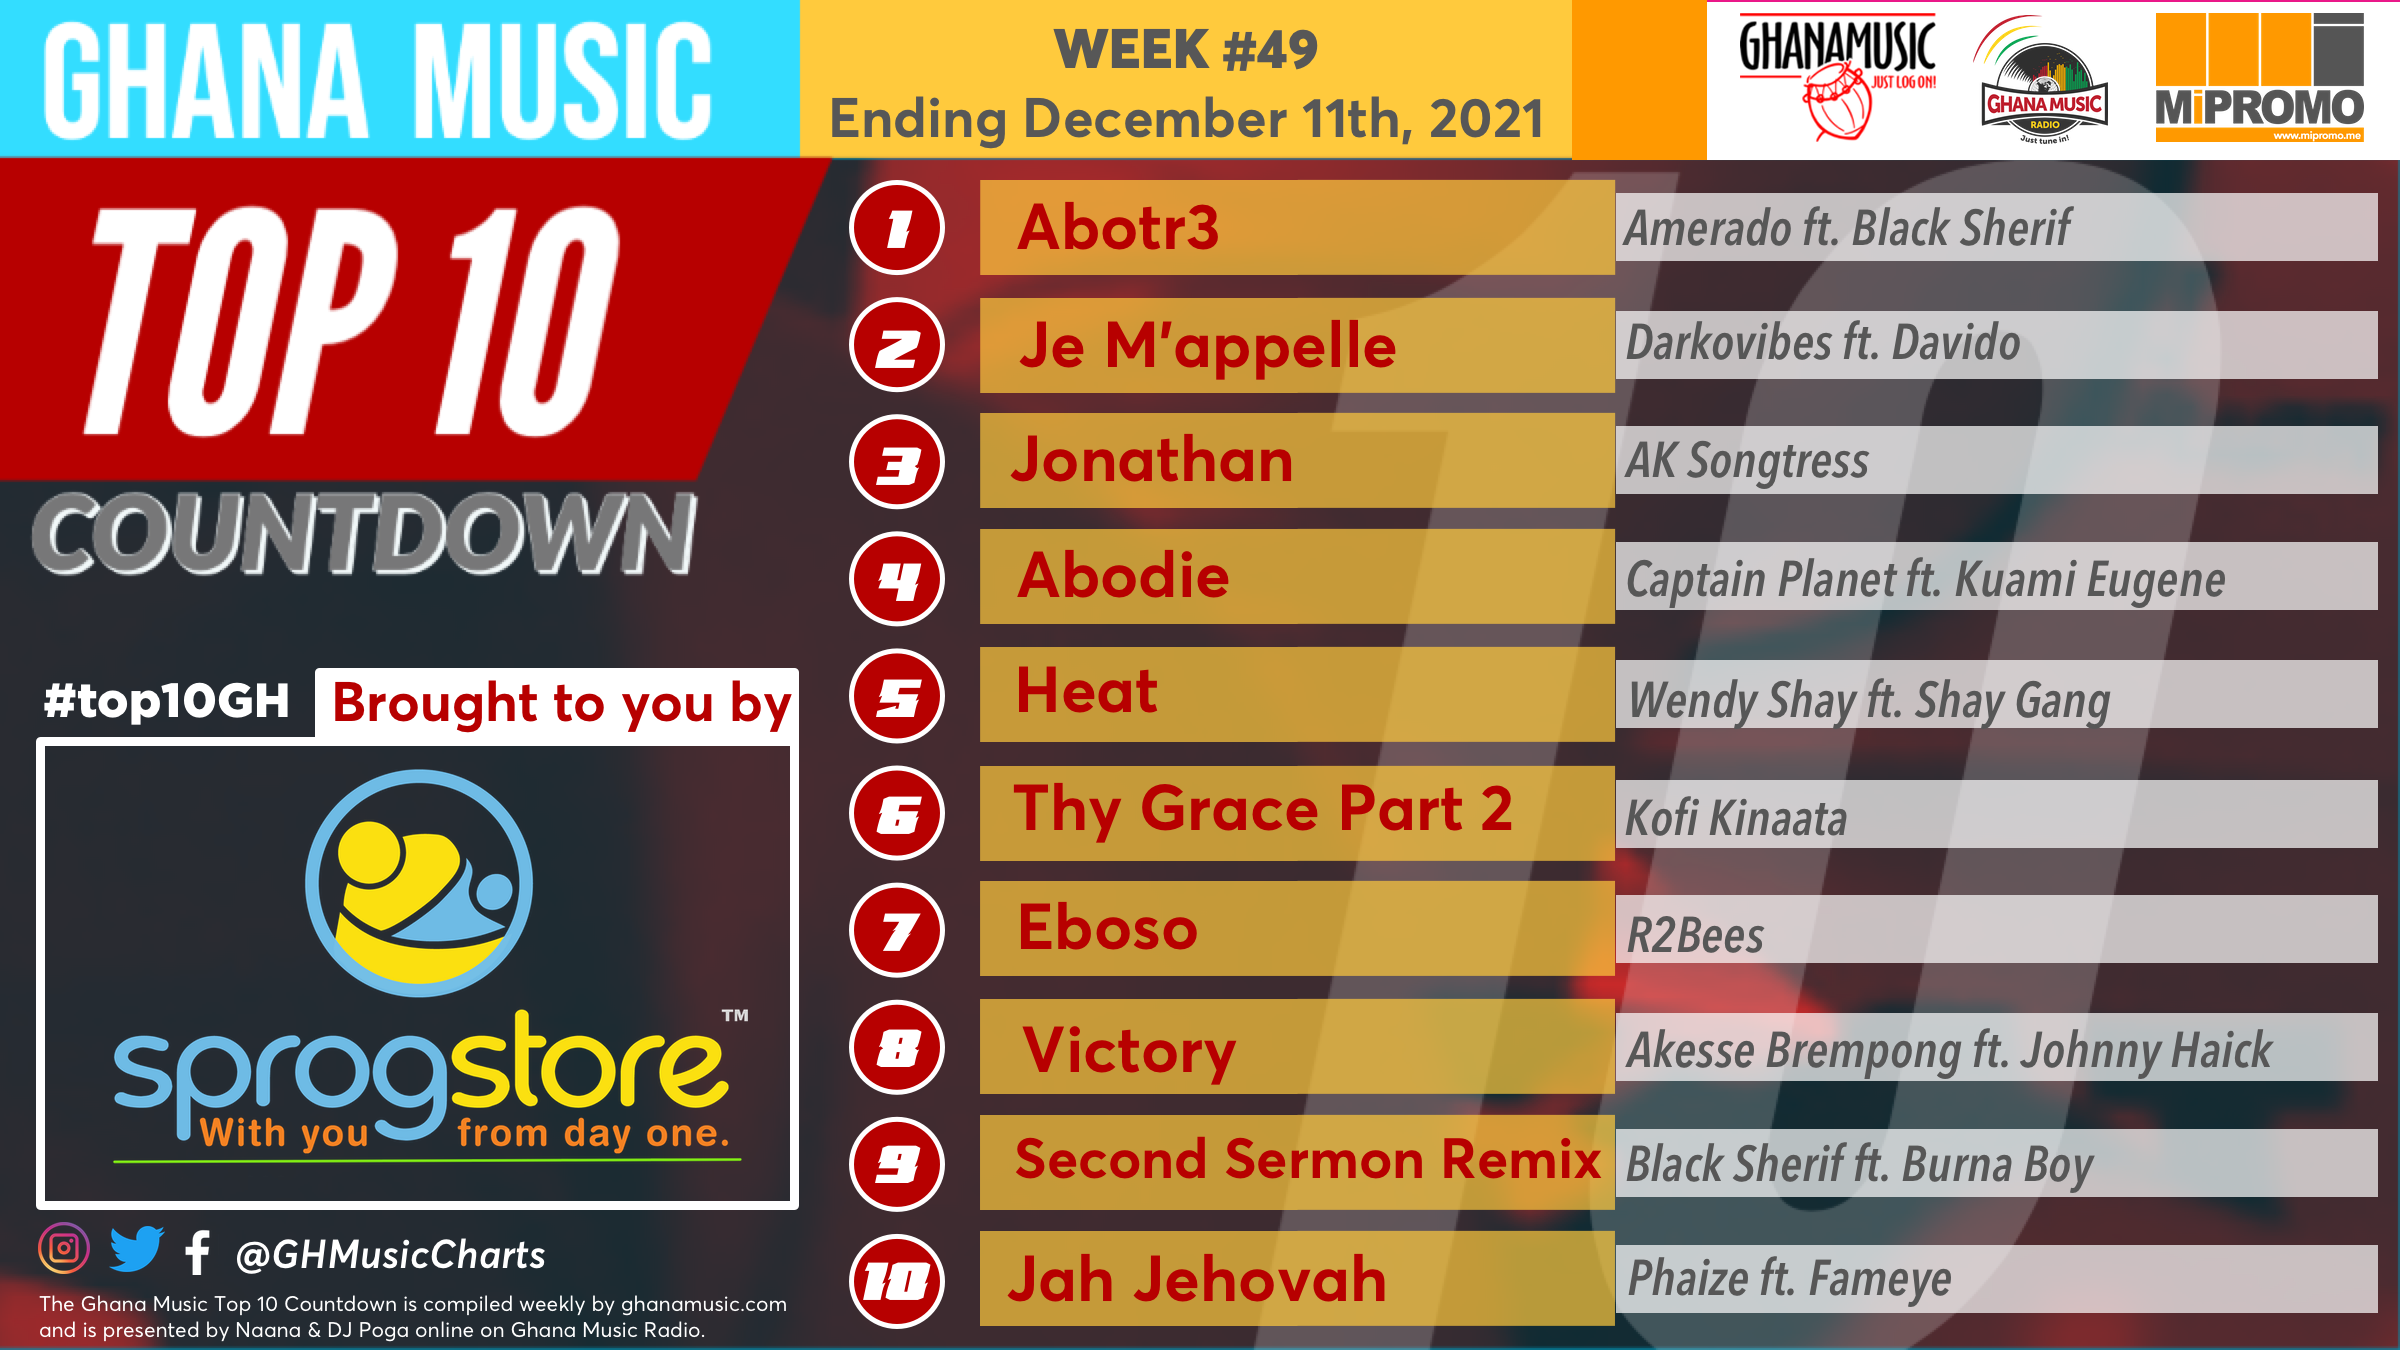 2021 Week 49: Ghana Music Top 10 Countdown